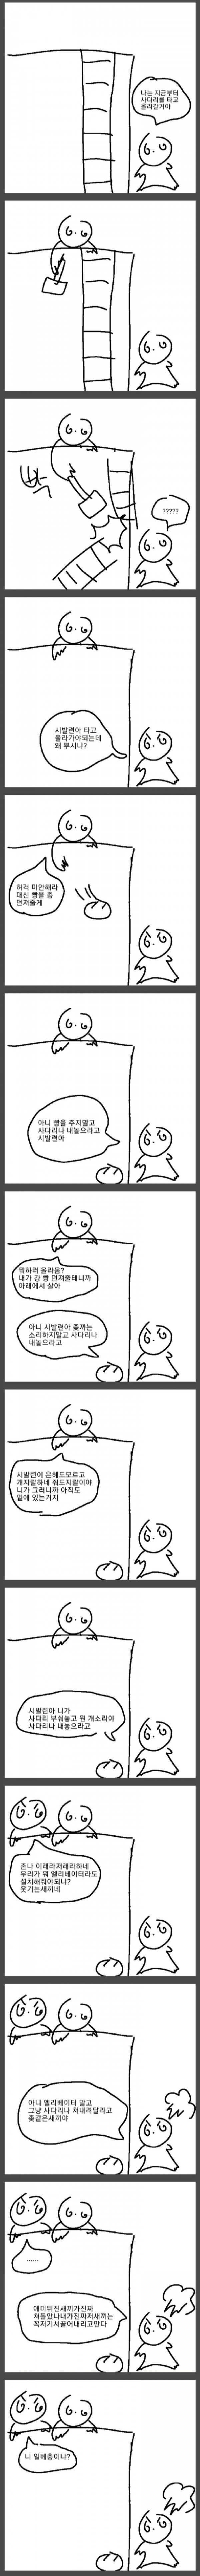 1677499437.jpg 싱글벙글 한국.jpg